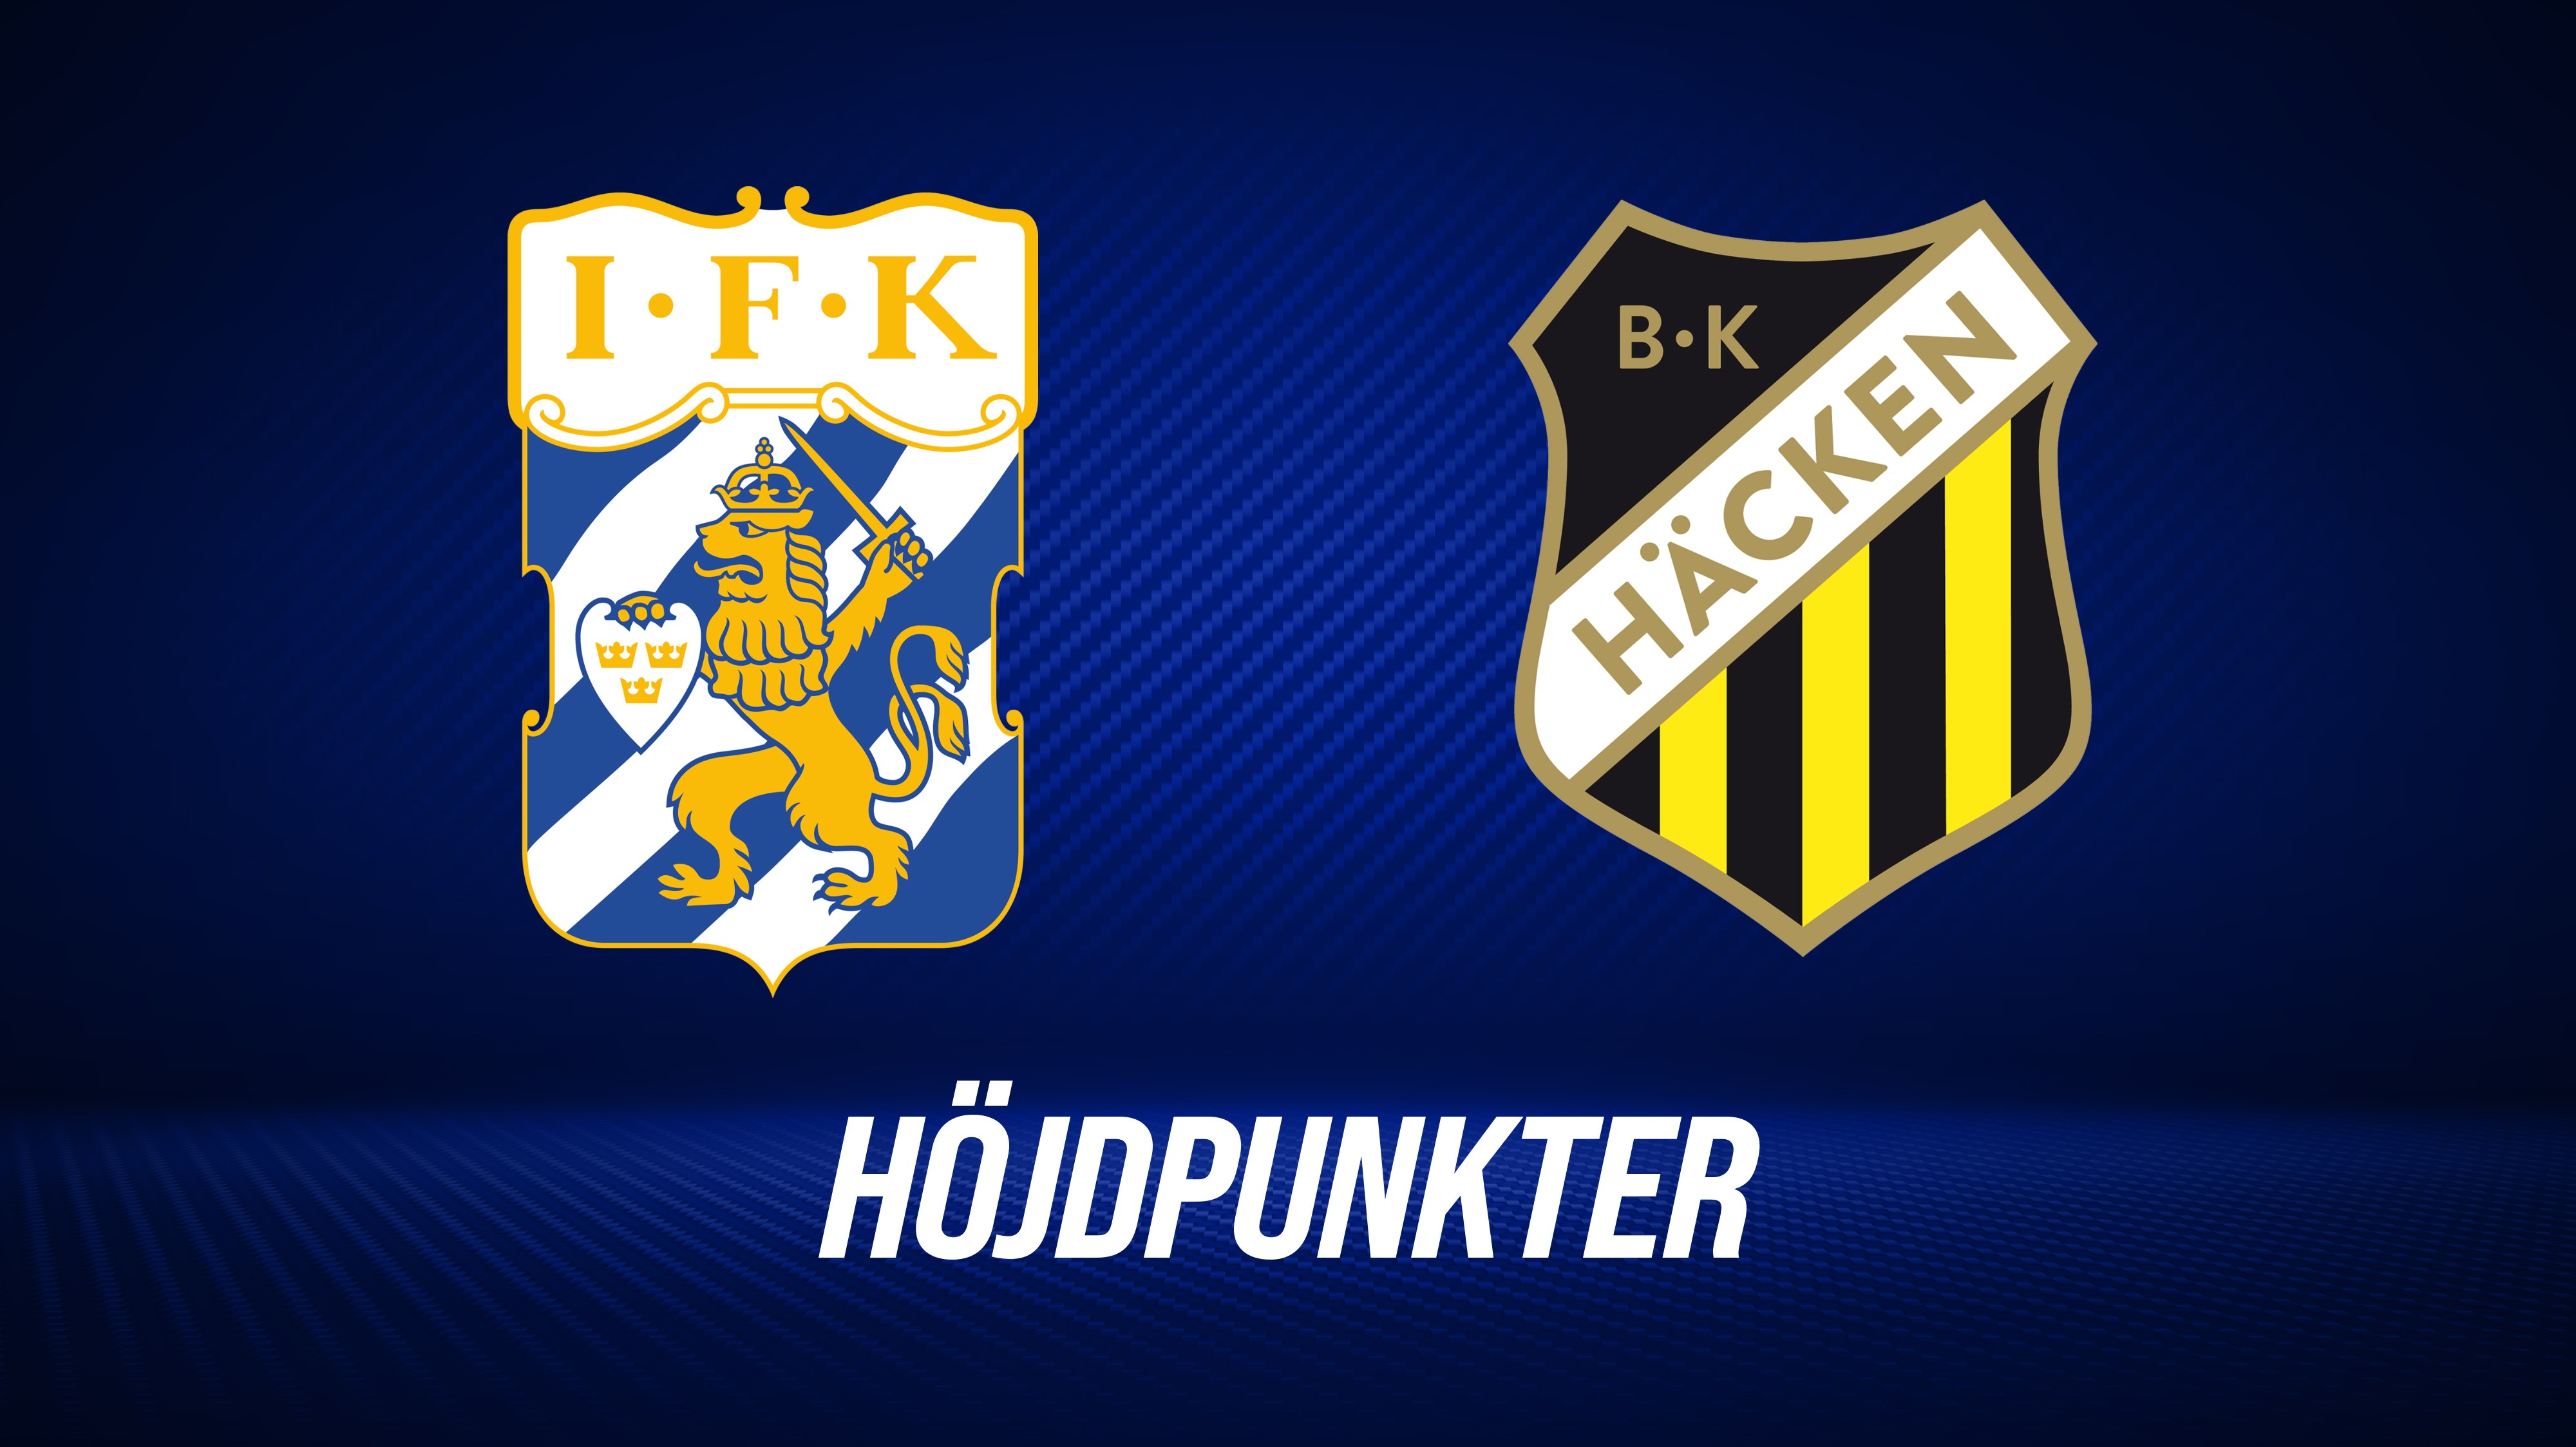 Höjdpunkter: IFK Göteborg - BK Häcken